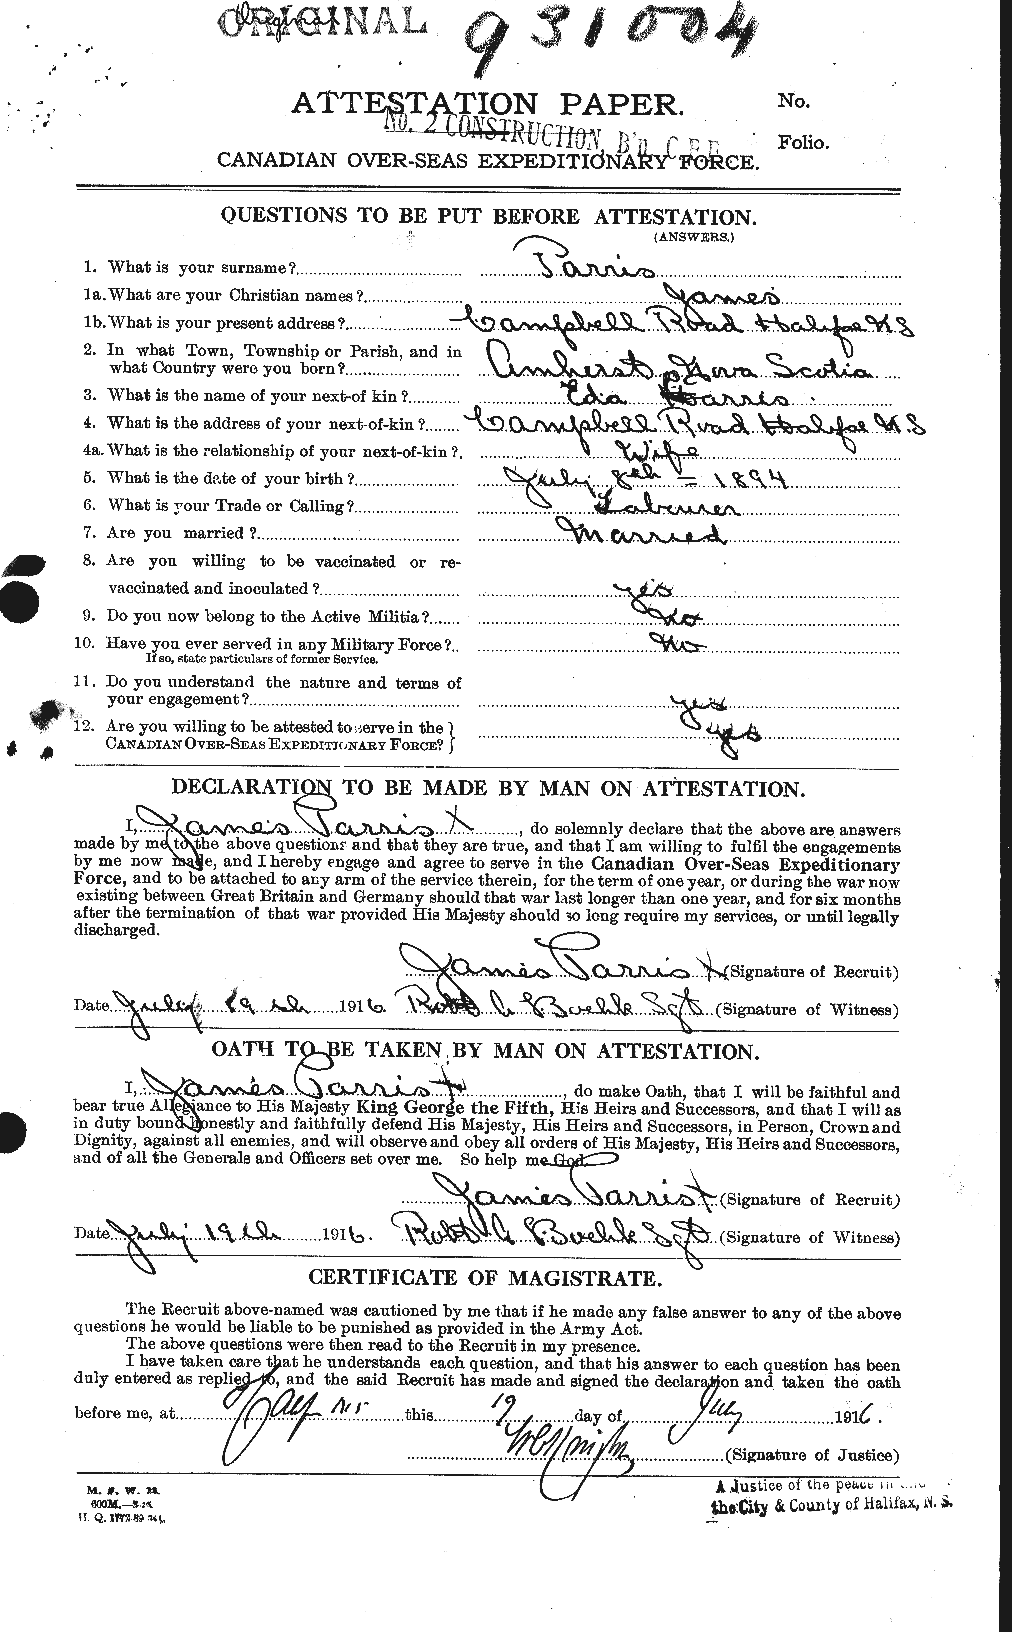 Dossiers du Personnel de la Première Guerre mondiale - CEC 566508a